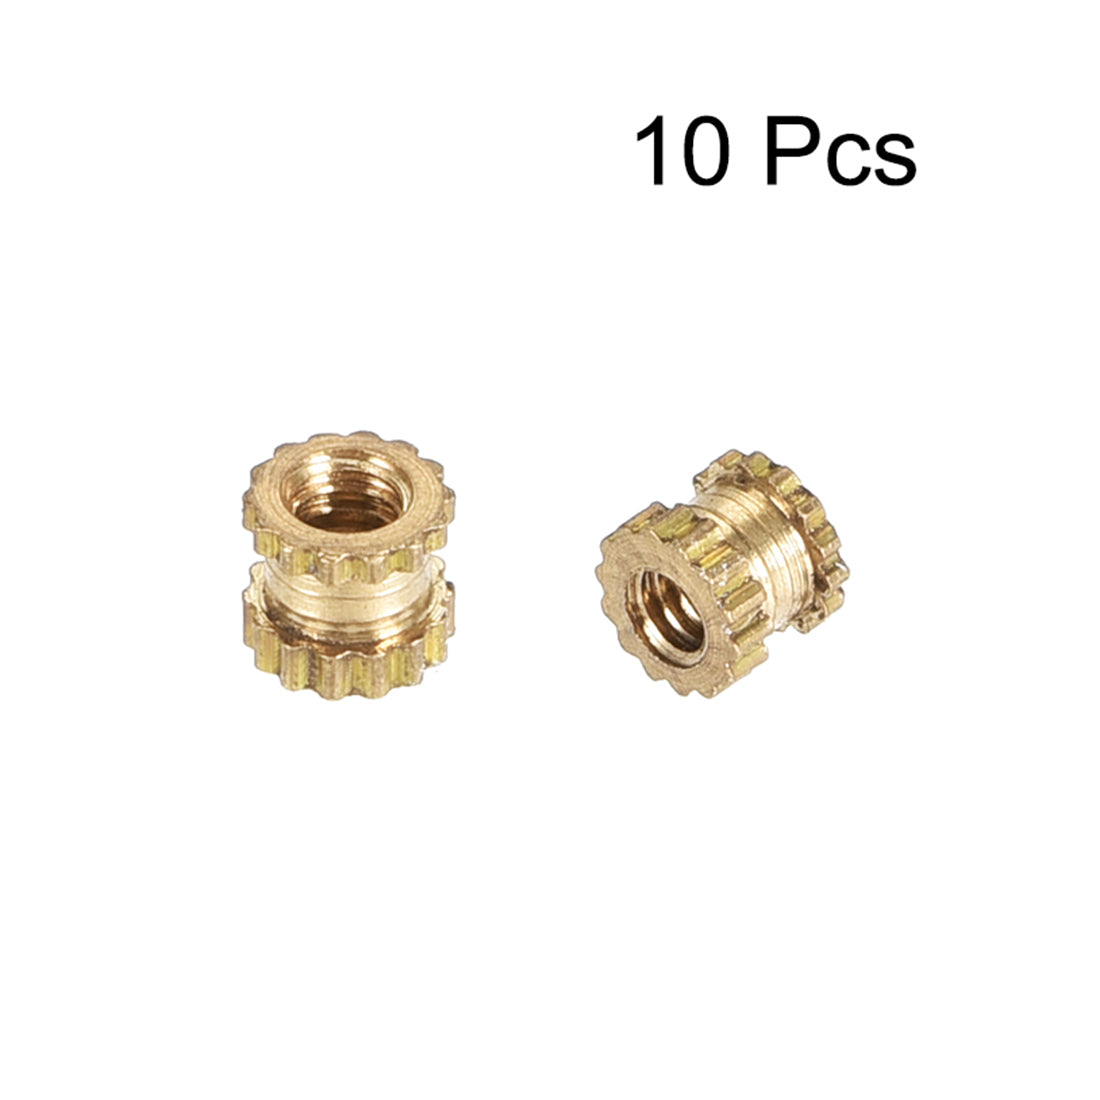 uxcell Uxcell Knurled Insert Nuts, M2 x 3mm(L) x 3.5mm(OD) Female Thread Brass Embedment Assortment Kit, 10 Pcs